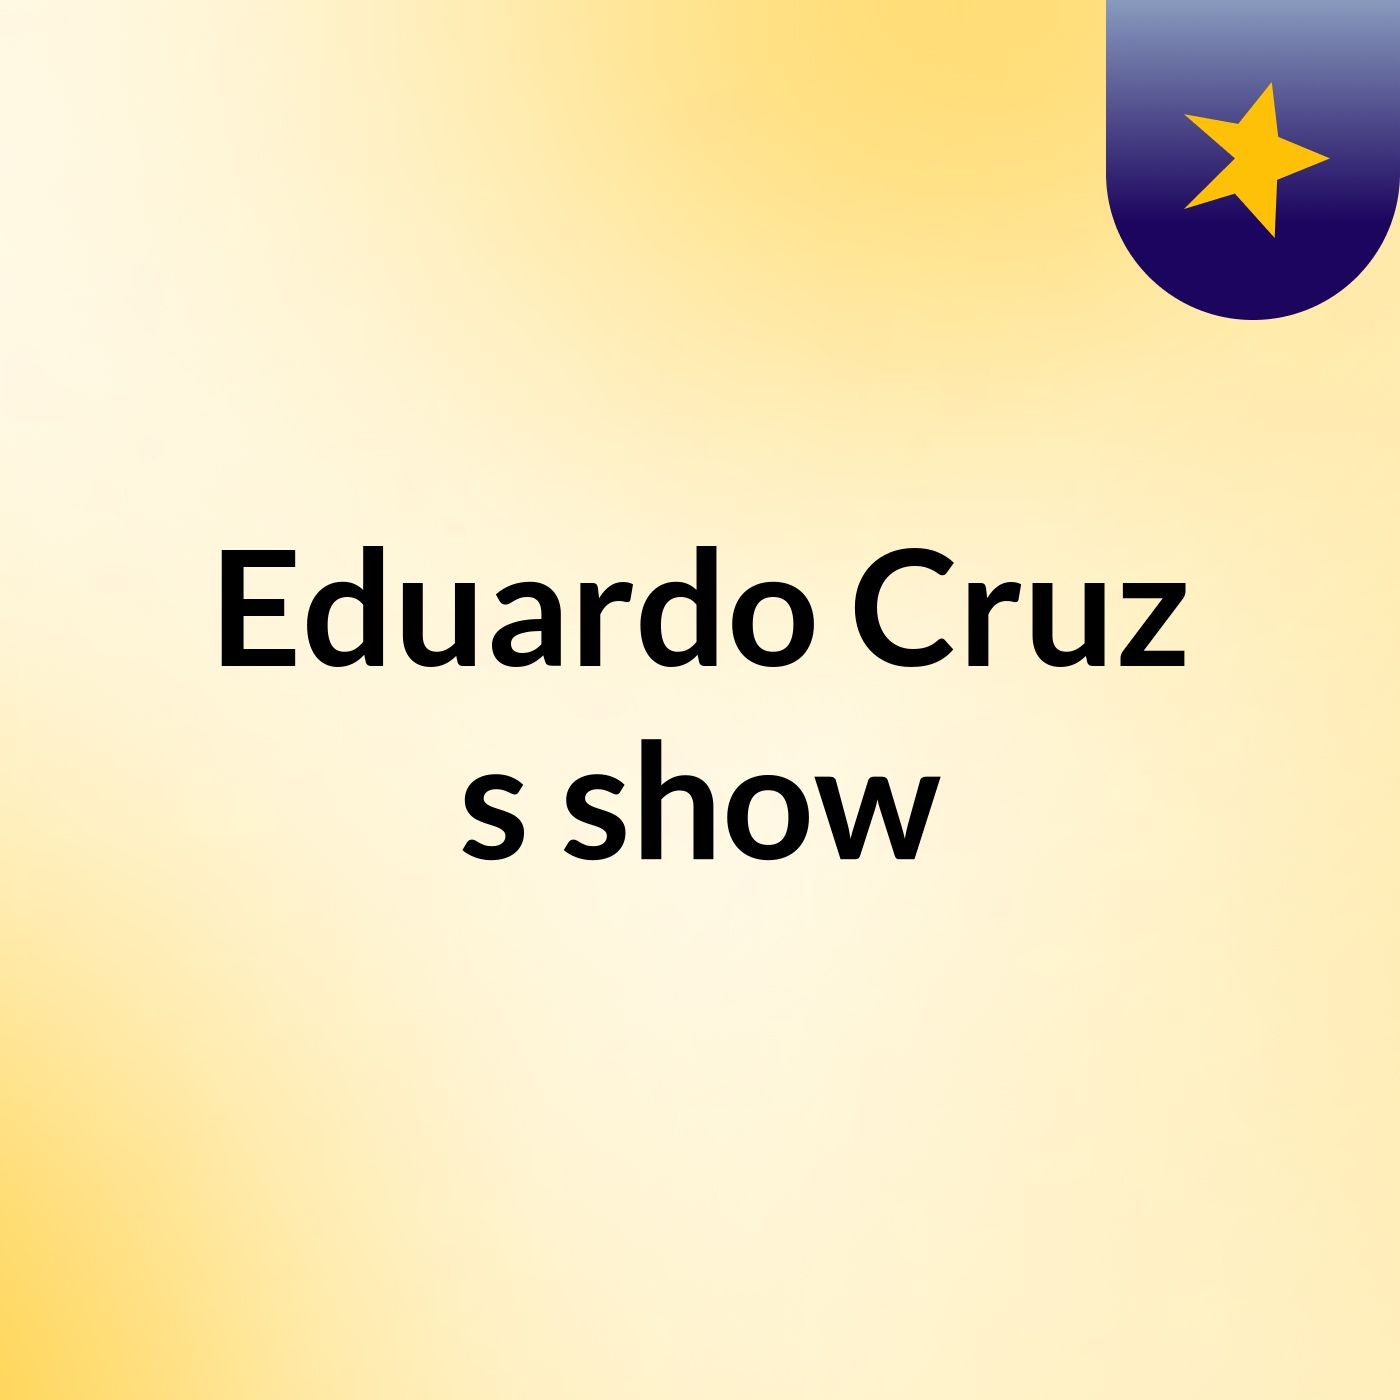 Eduardo Cruz's show